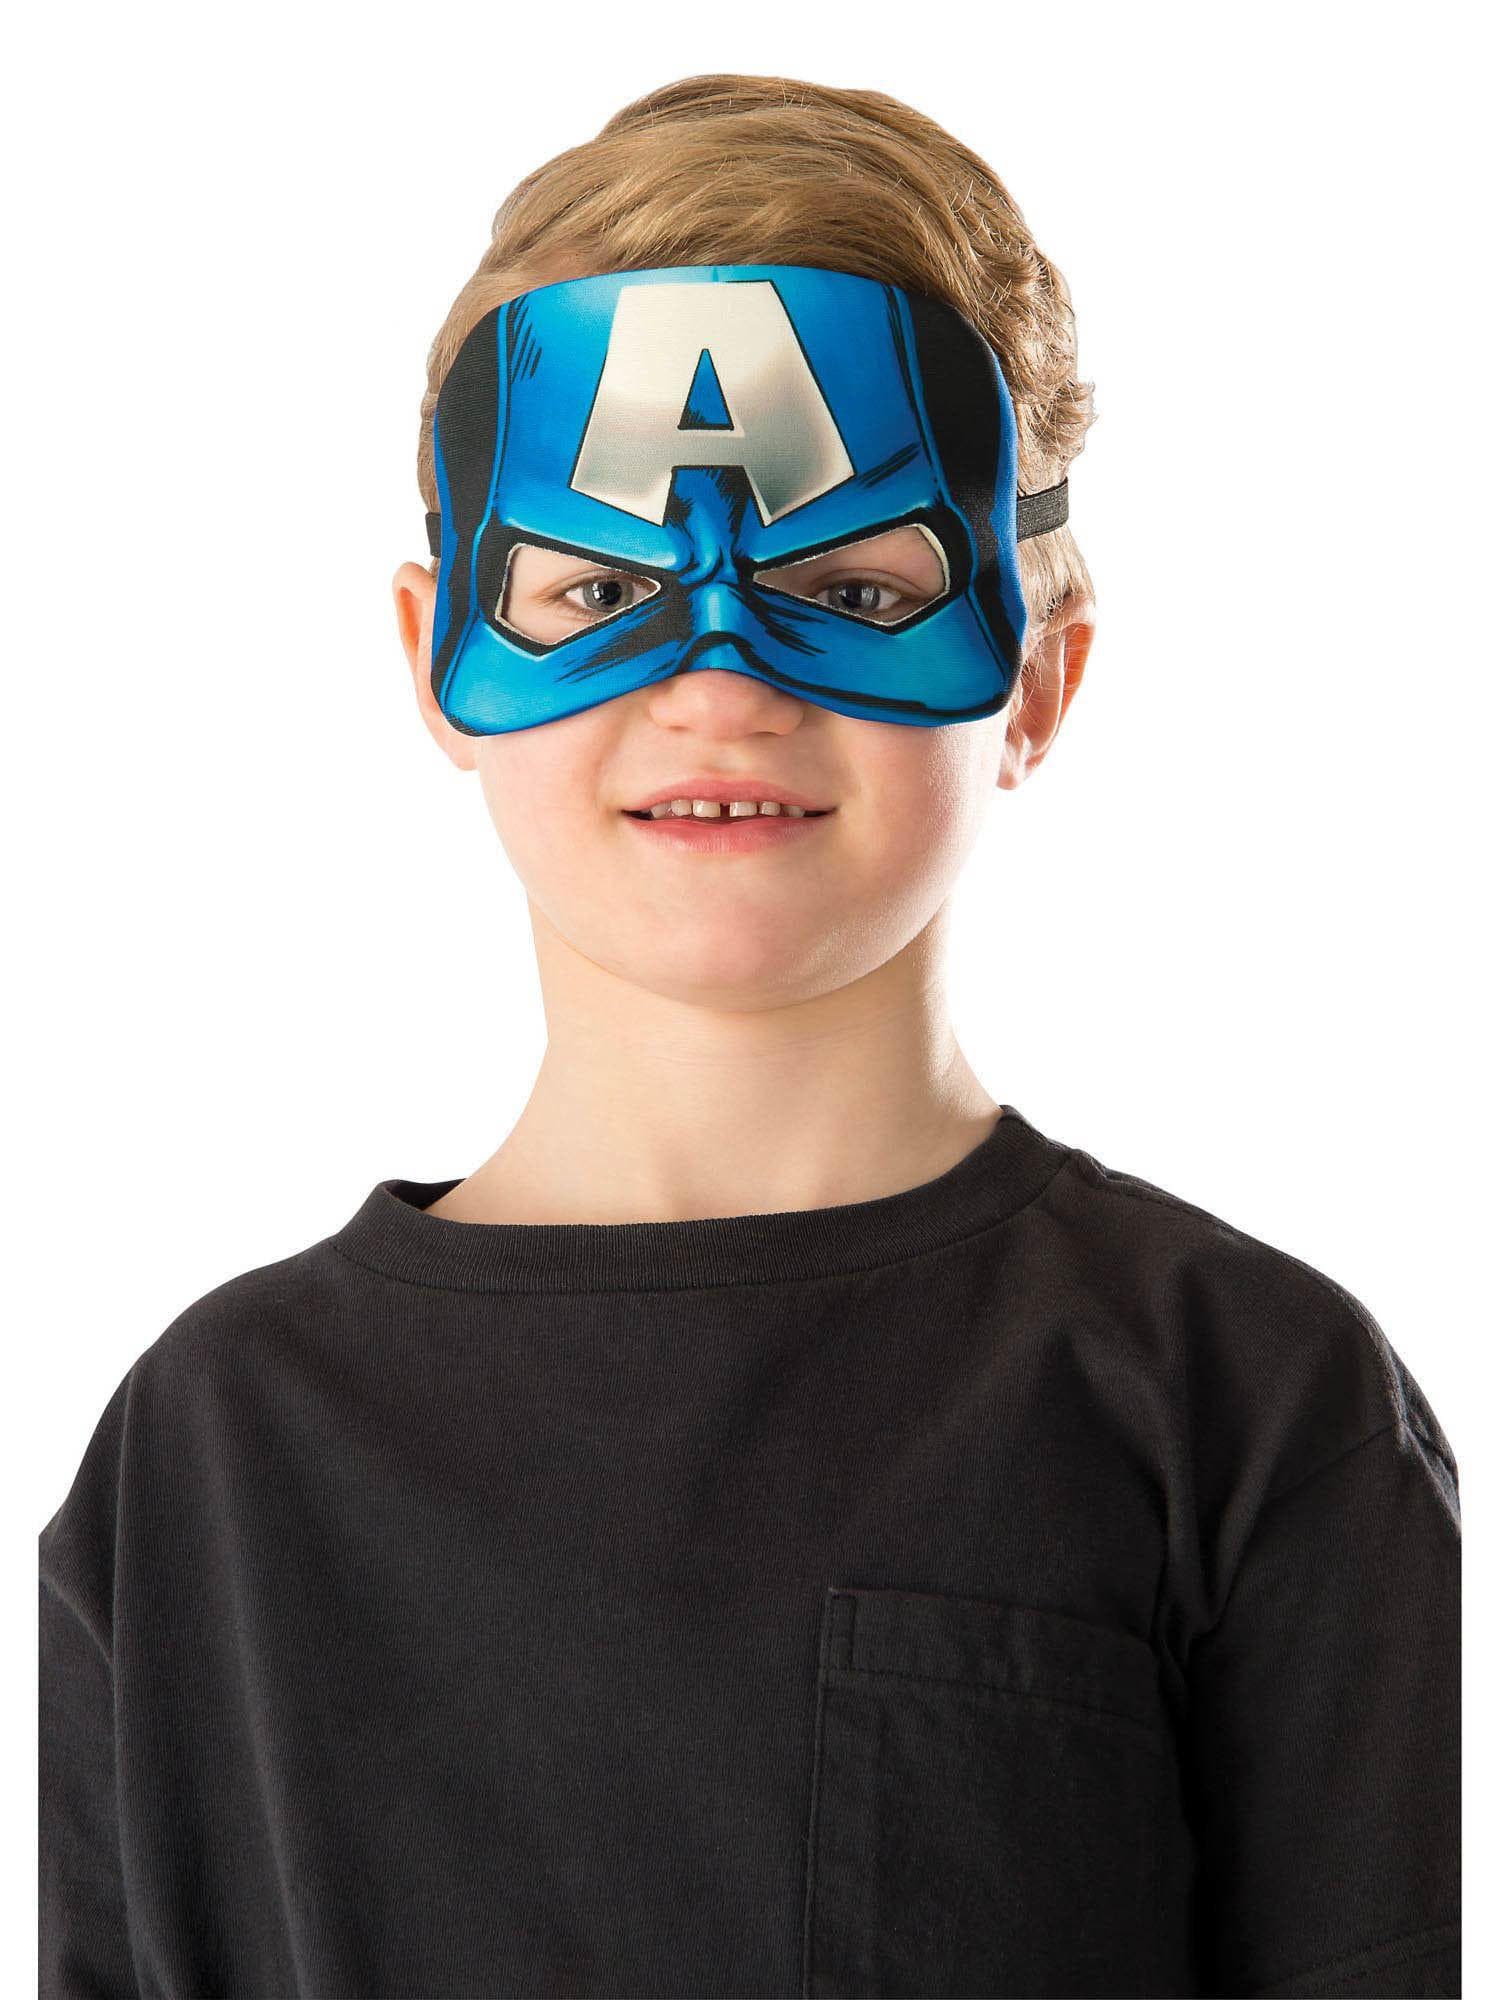 Boys' Avengers Captain America Eye Mask - costumes.com